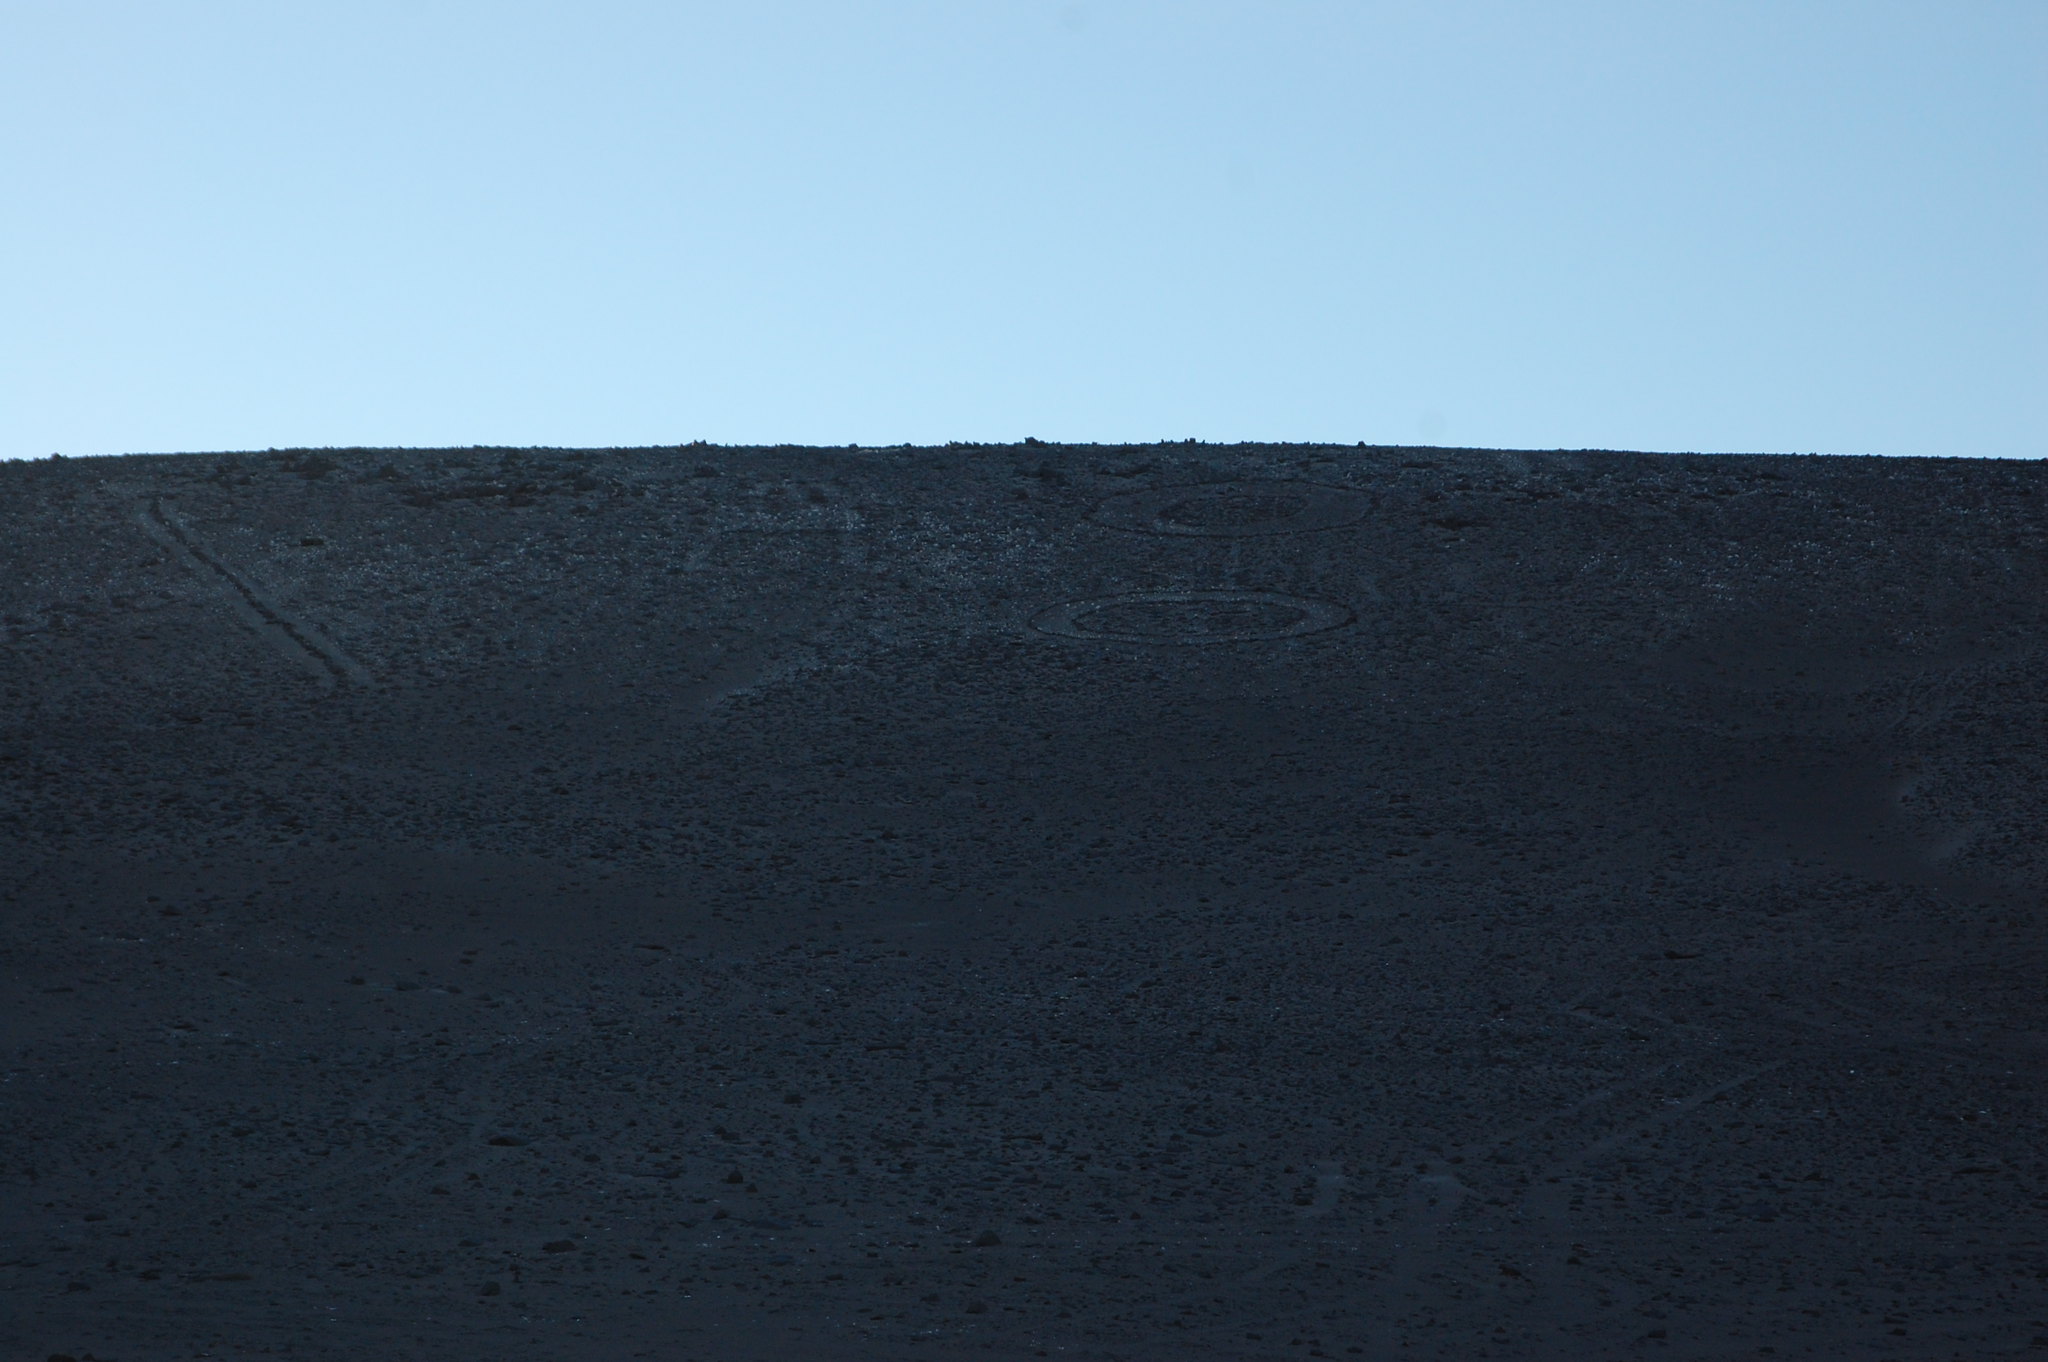 Gigante de Atacama, near Iquique, Tarapacá, Chile